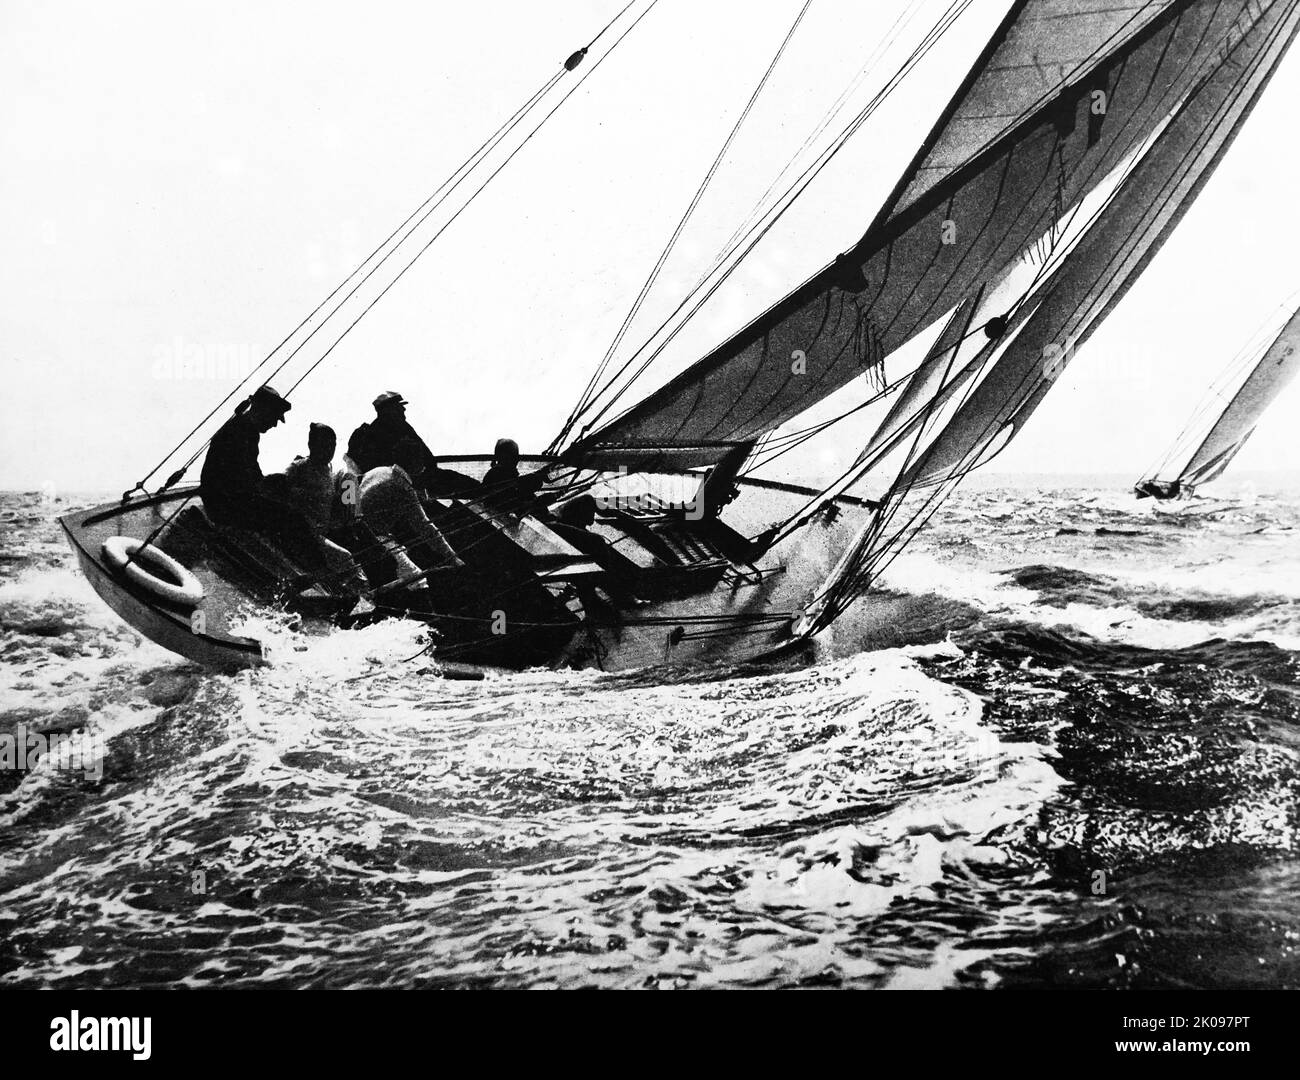 Haute sur le vent. Photographie en noir et blanc du bateau à voile et de l'équipage. Banque D'Images